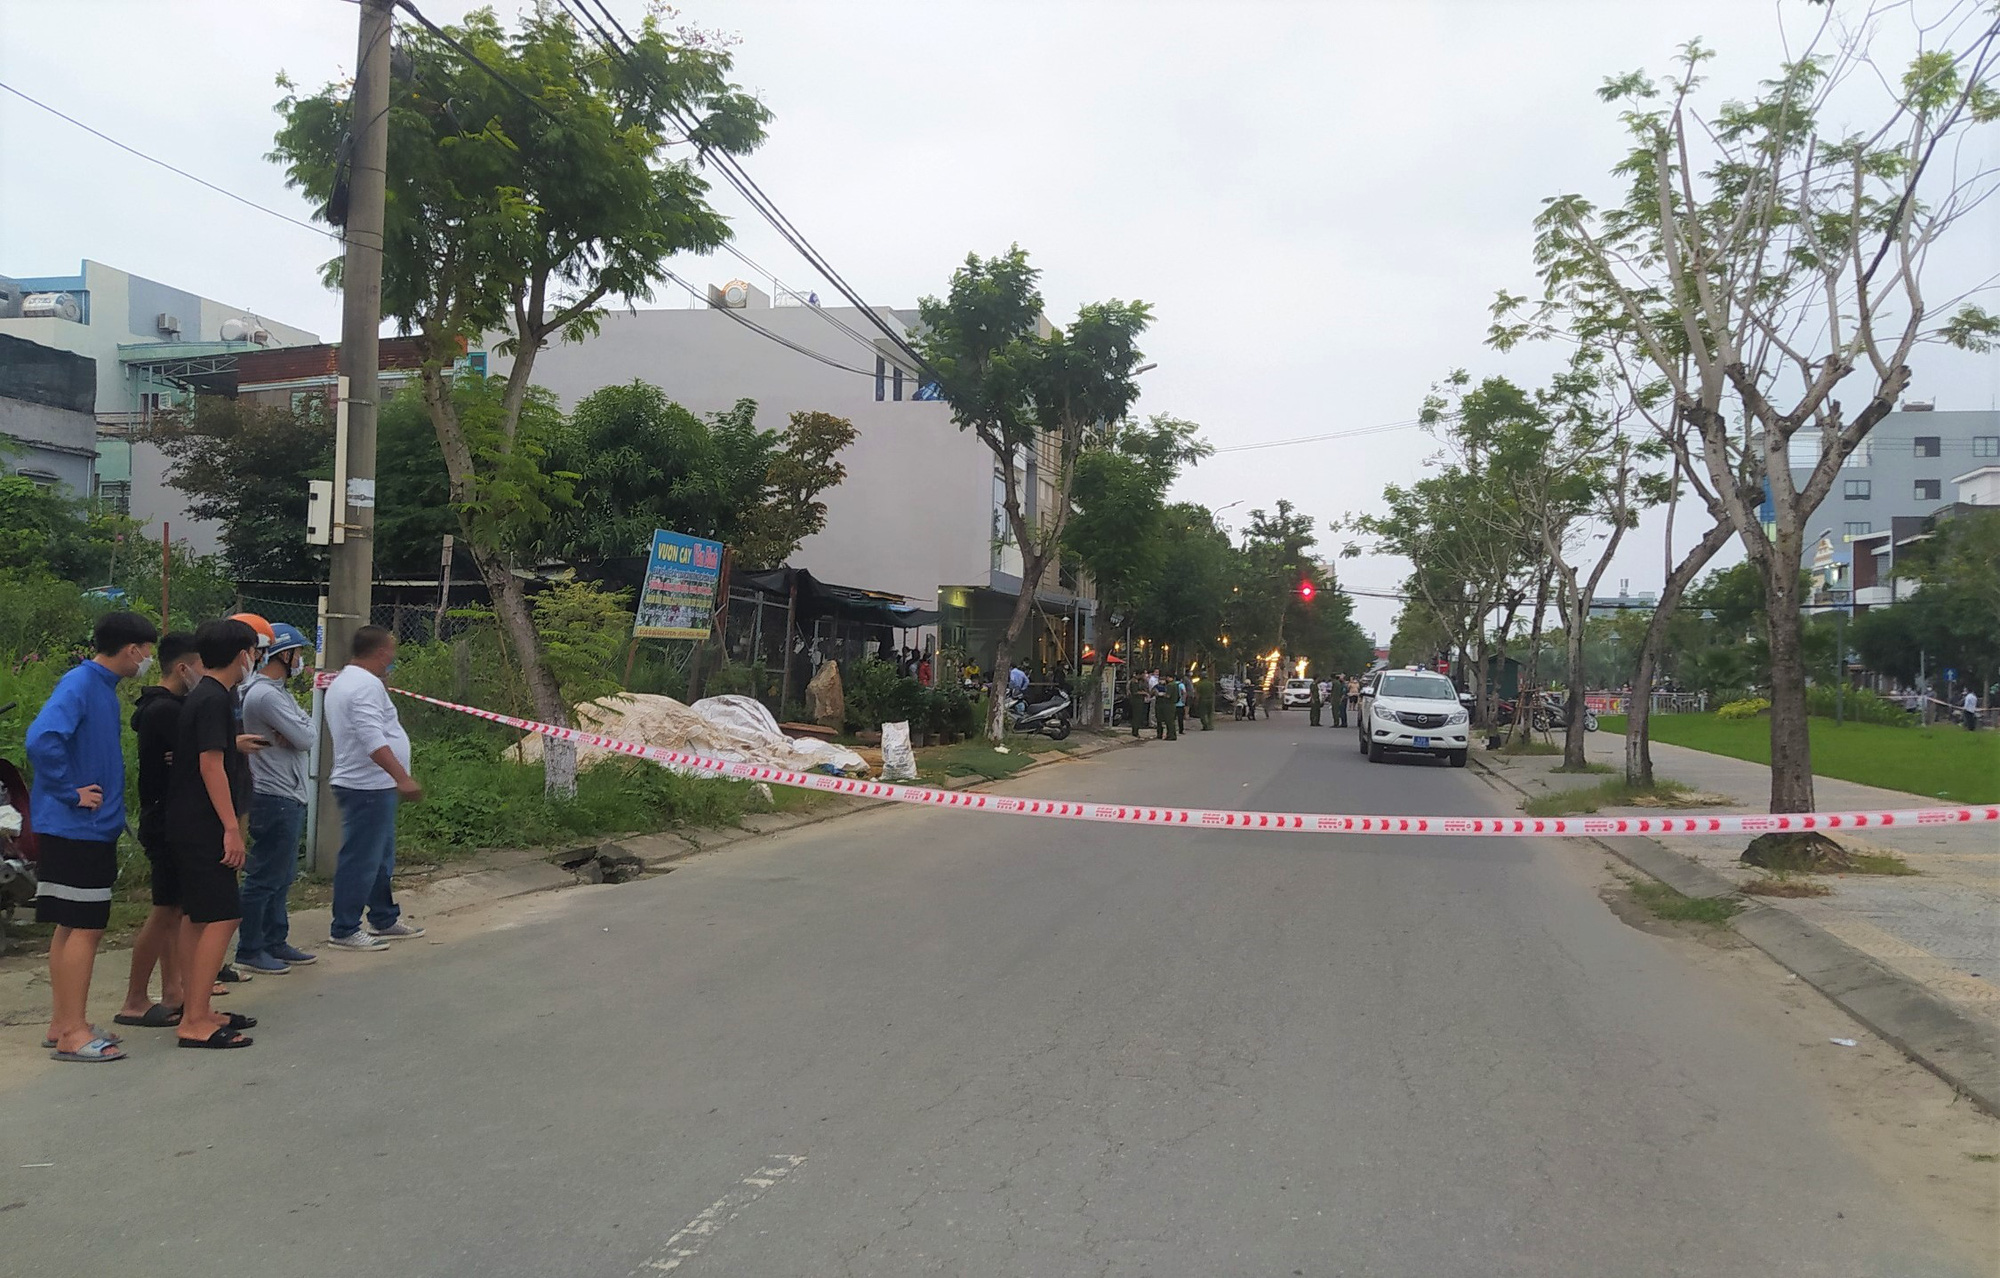 Chân dung nghi phạm 16 tuổi đâm chết thiếu niên 13 tuổi giữa đường phố Đà Nẵng - Ảnh 2.